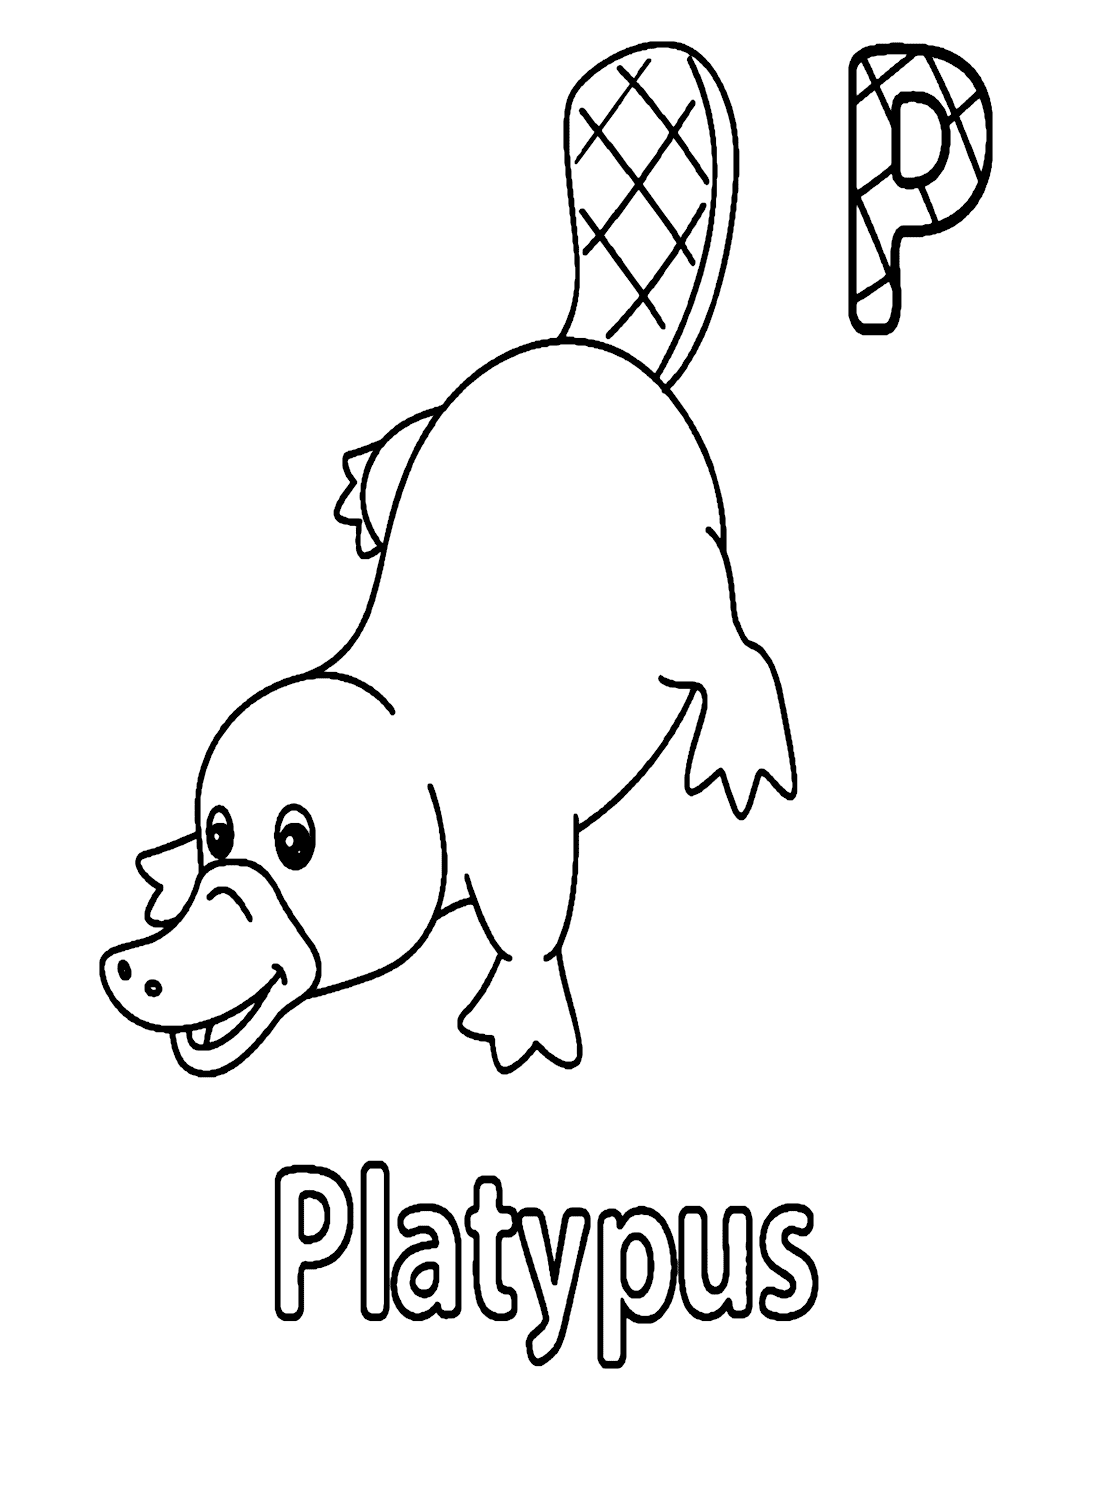 Letra P para ornitorrinco de Platypus